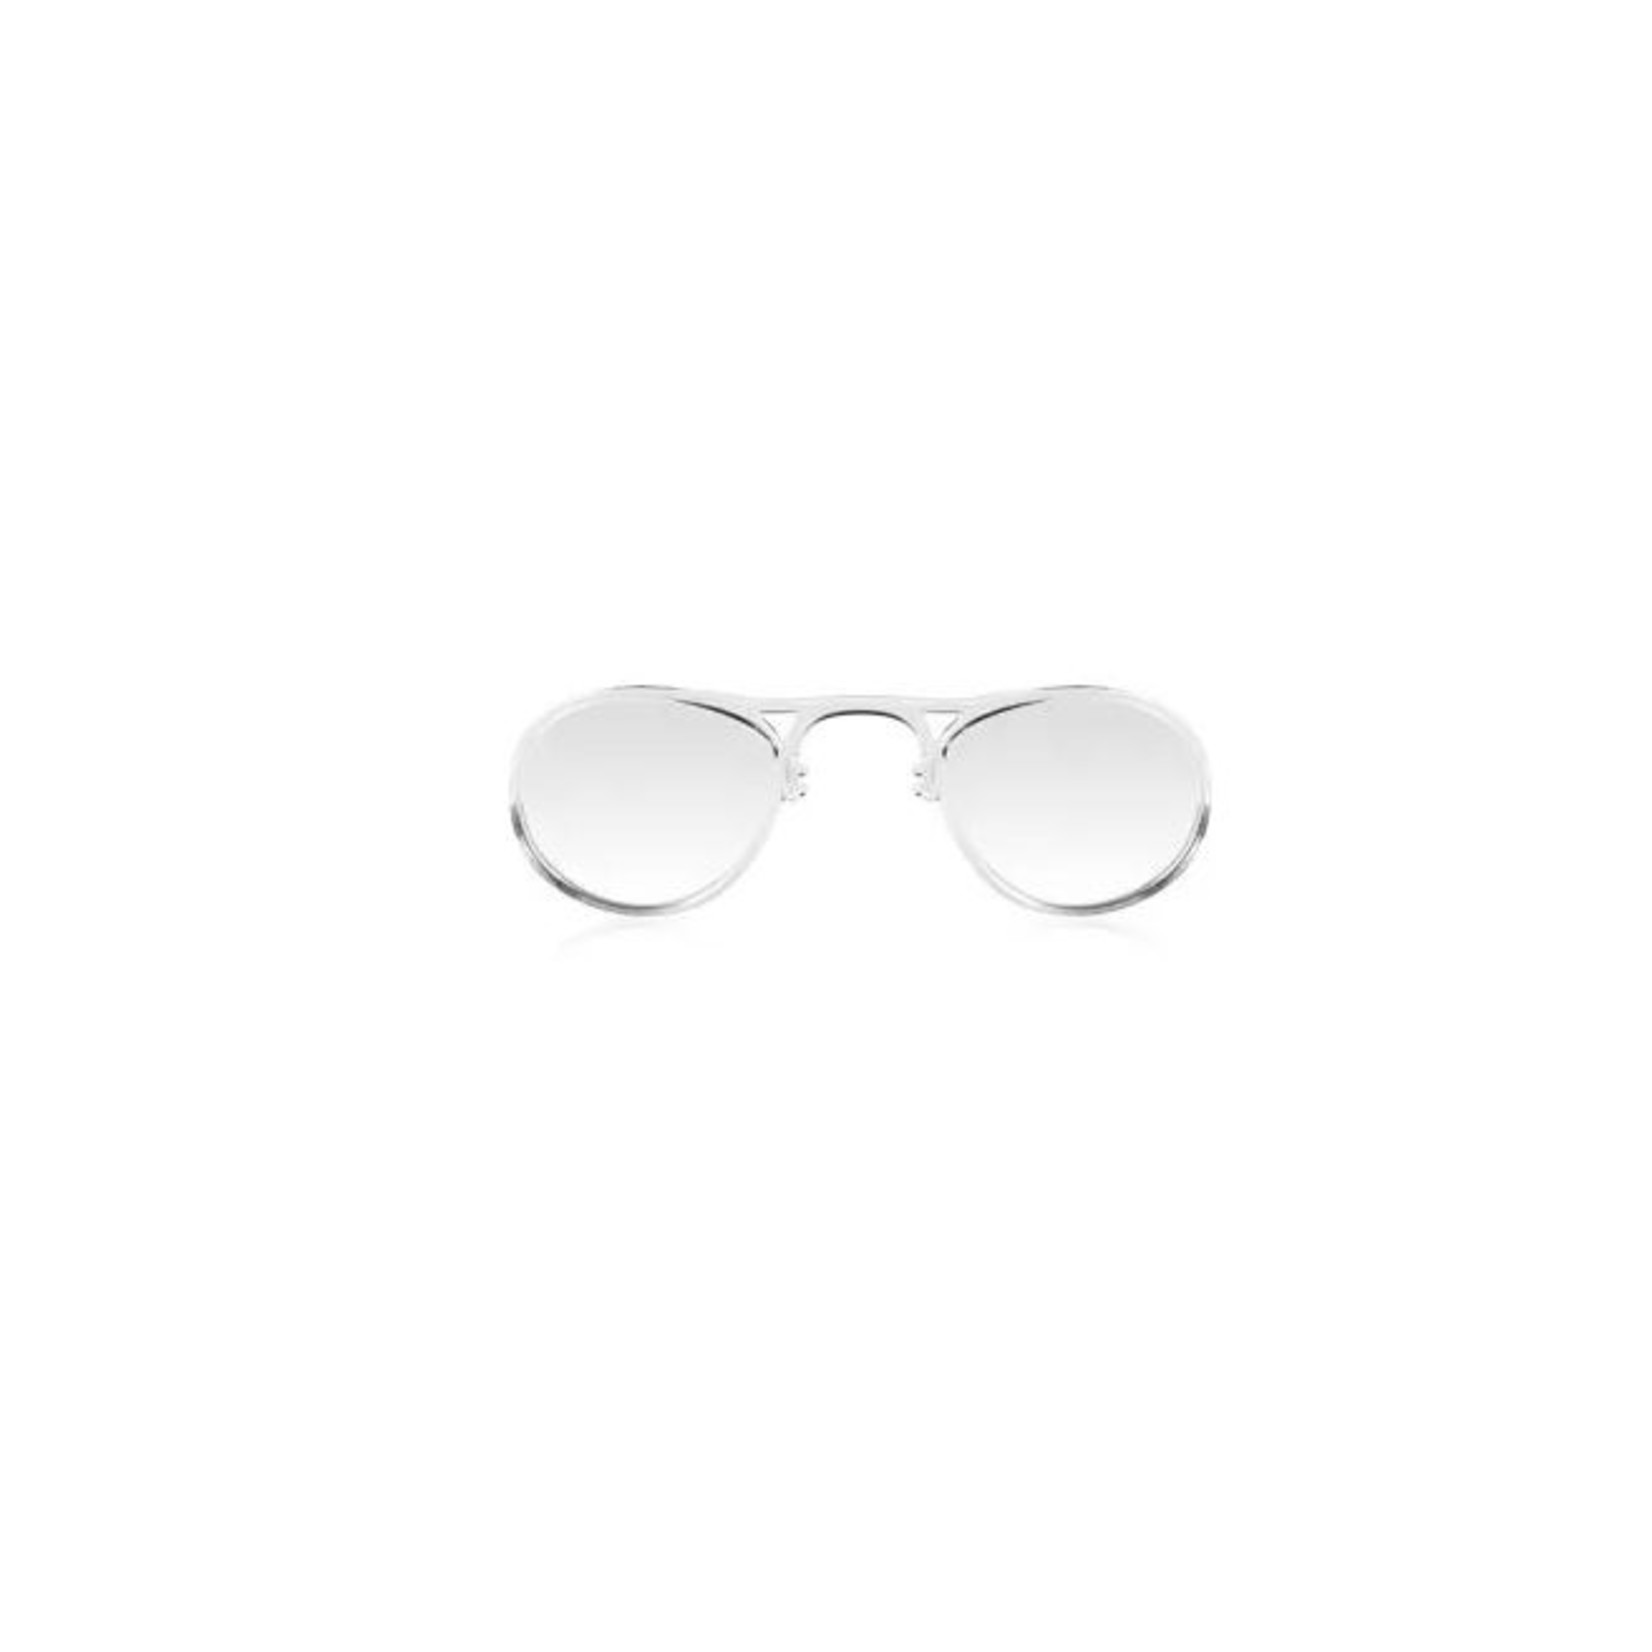 Tifosi Tifosi Rx Adaptor Roubaix Readers Sunglasses